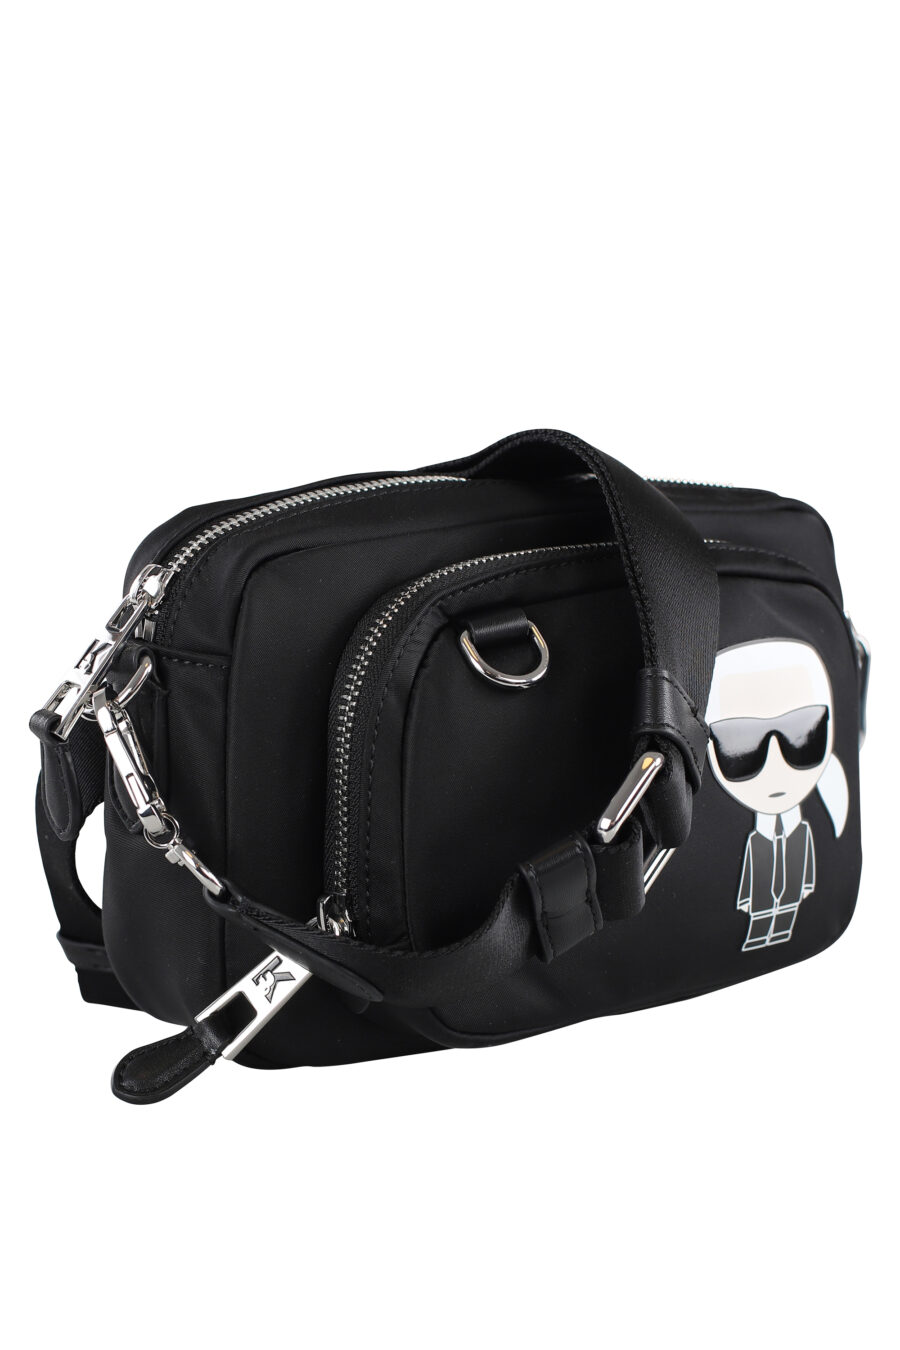 Black shoulder bag with optional maxilogo "karl" fanny pack - IMG 6993